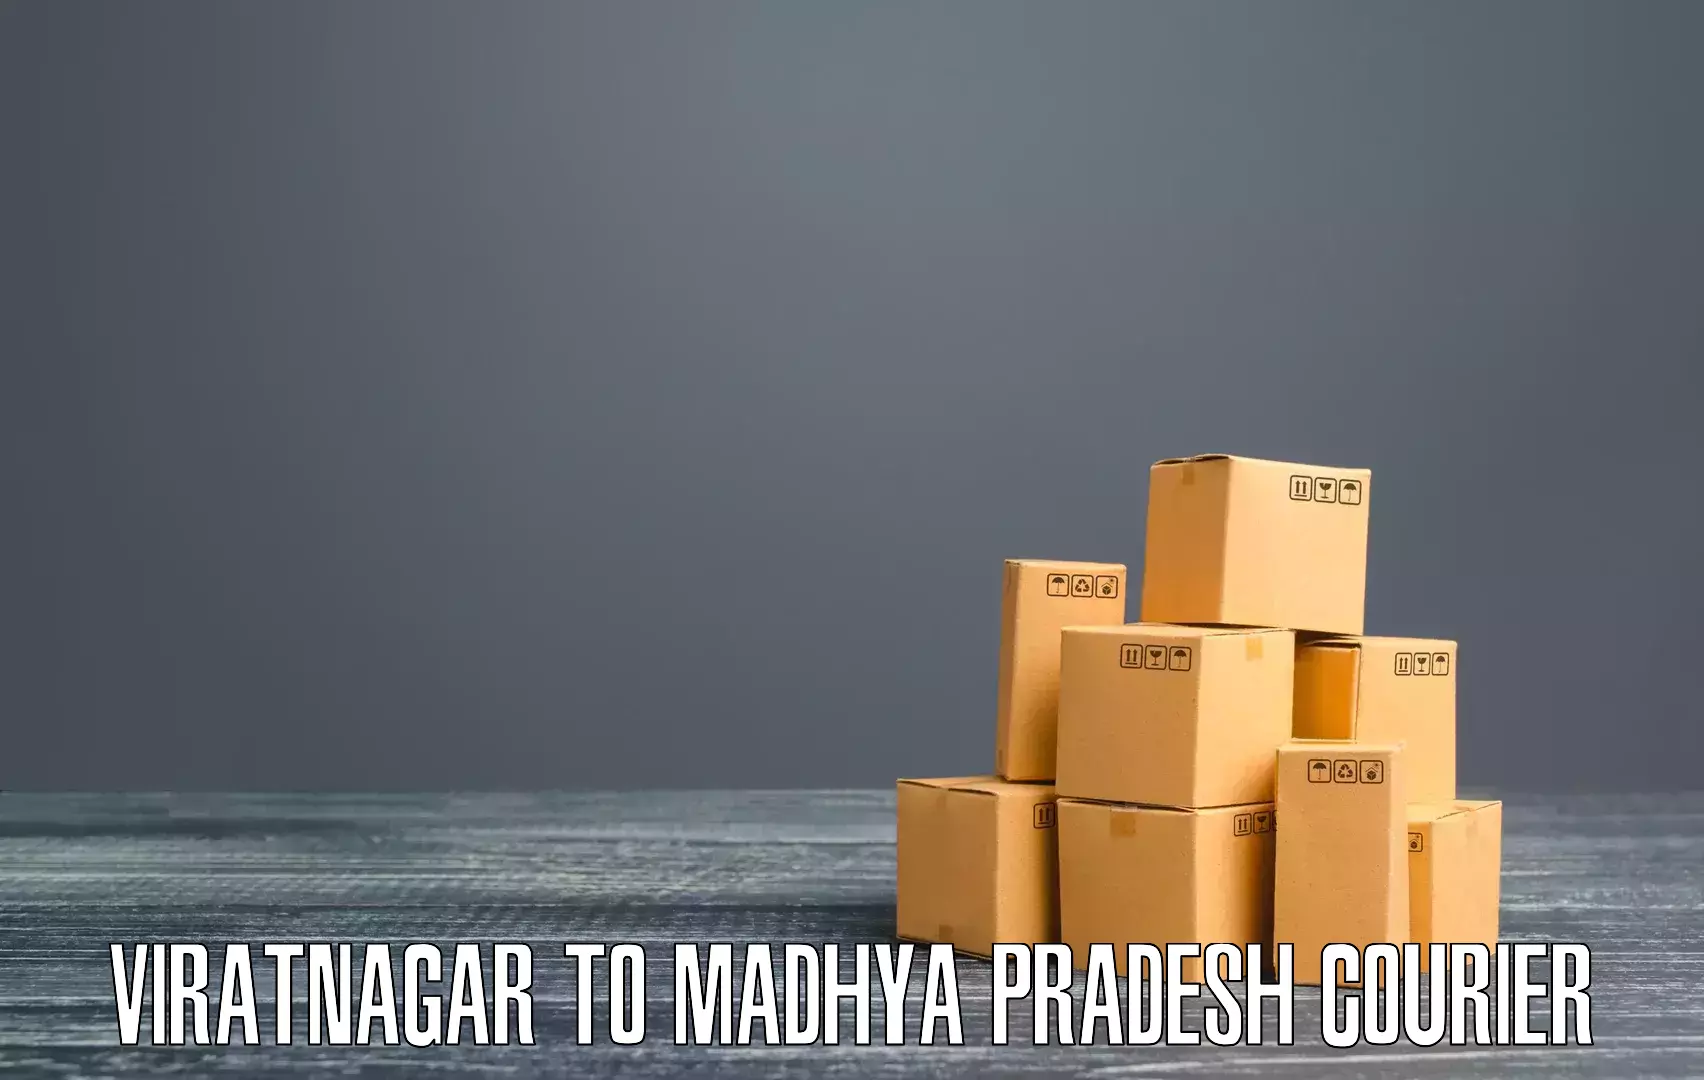 Fast shipping solutions Viratnagar to Madhya Pradesh